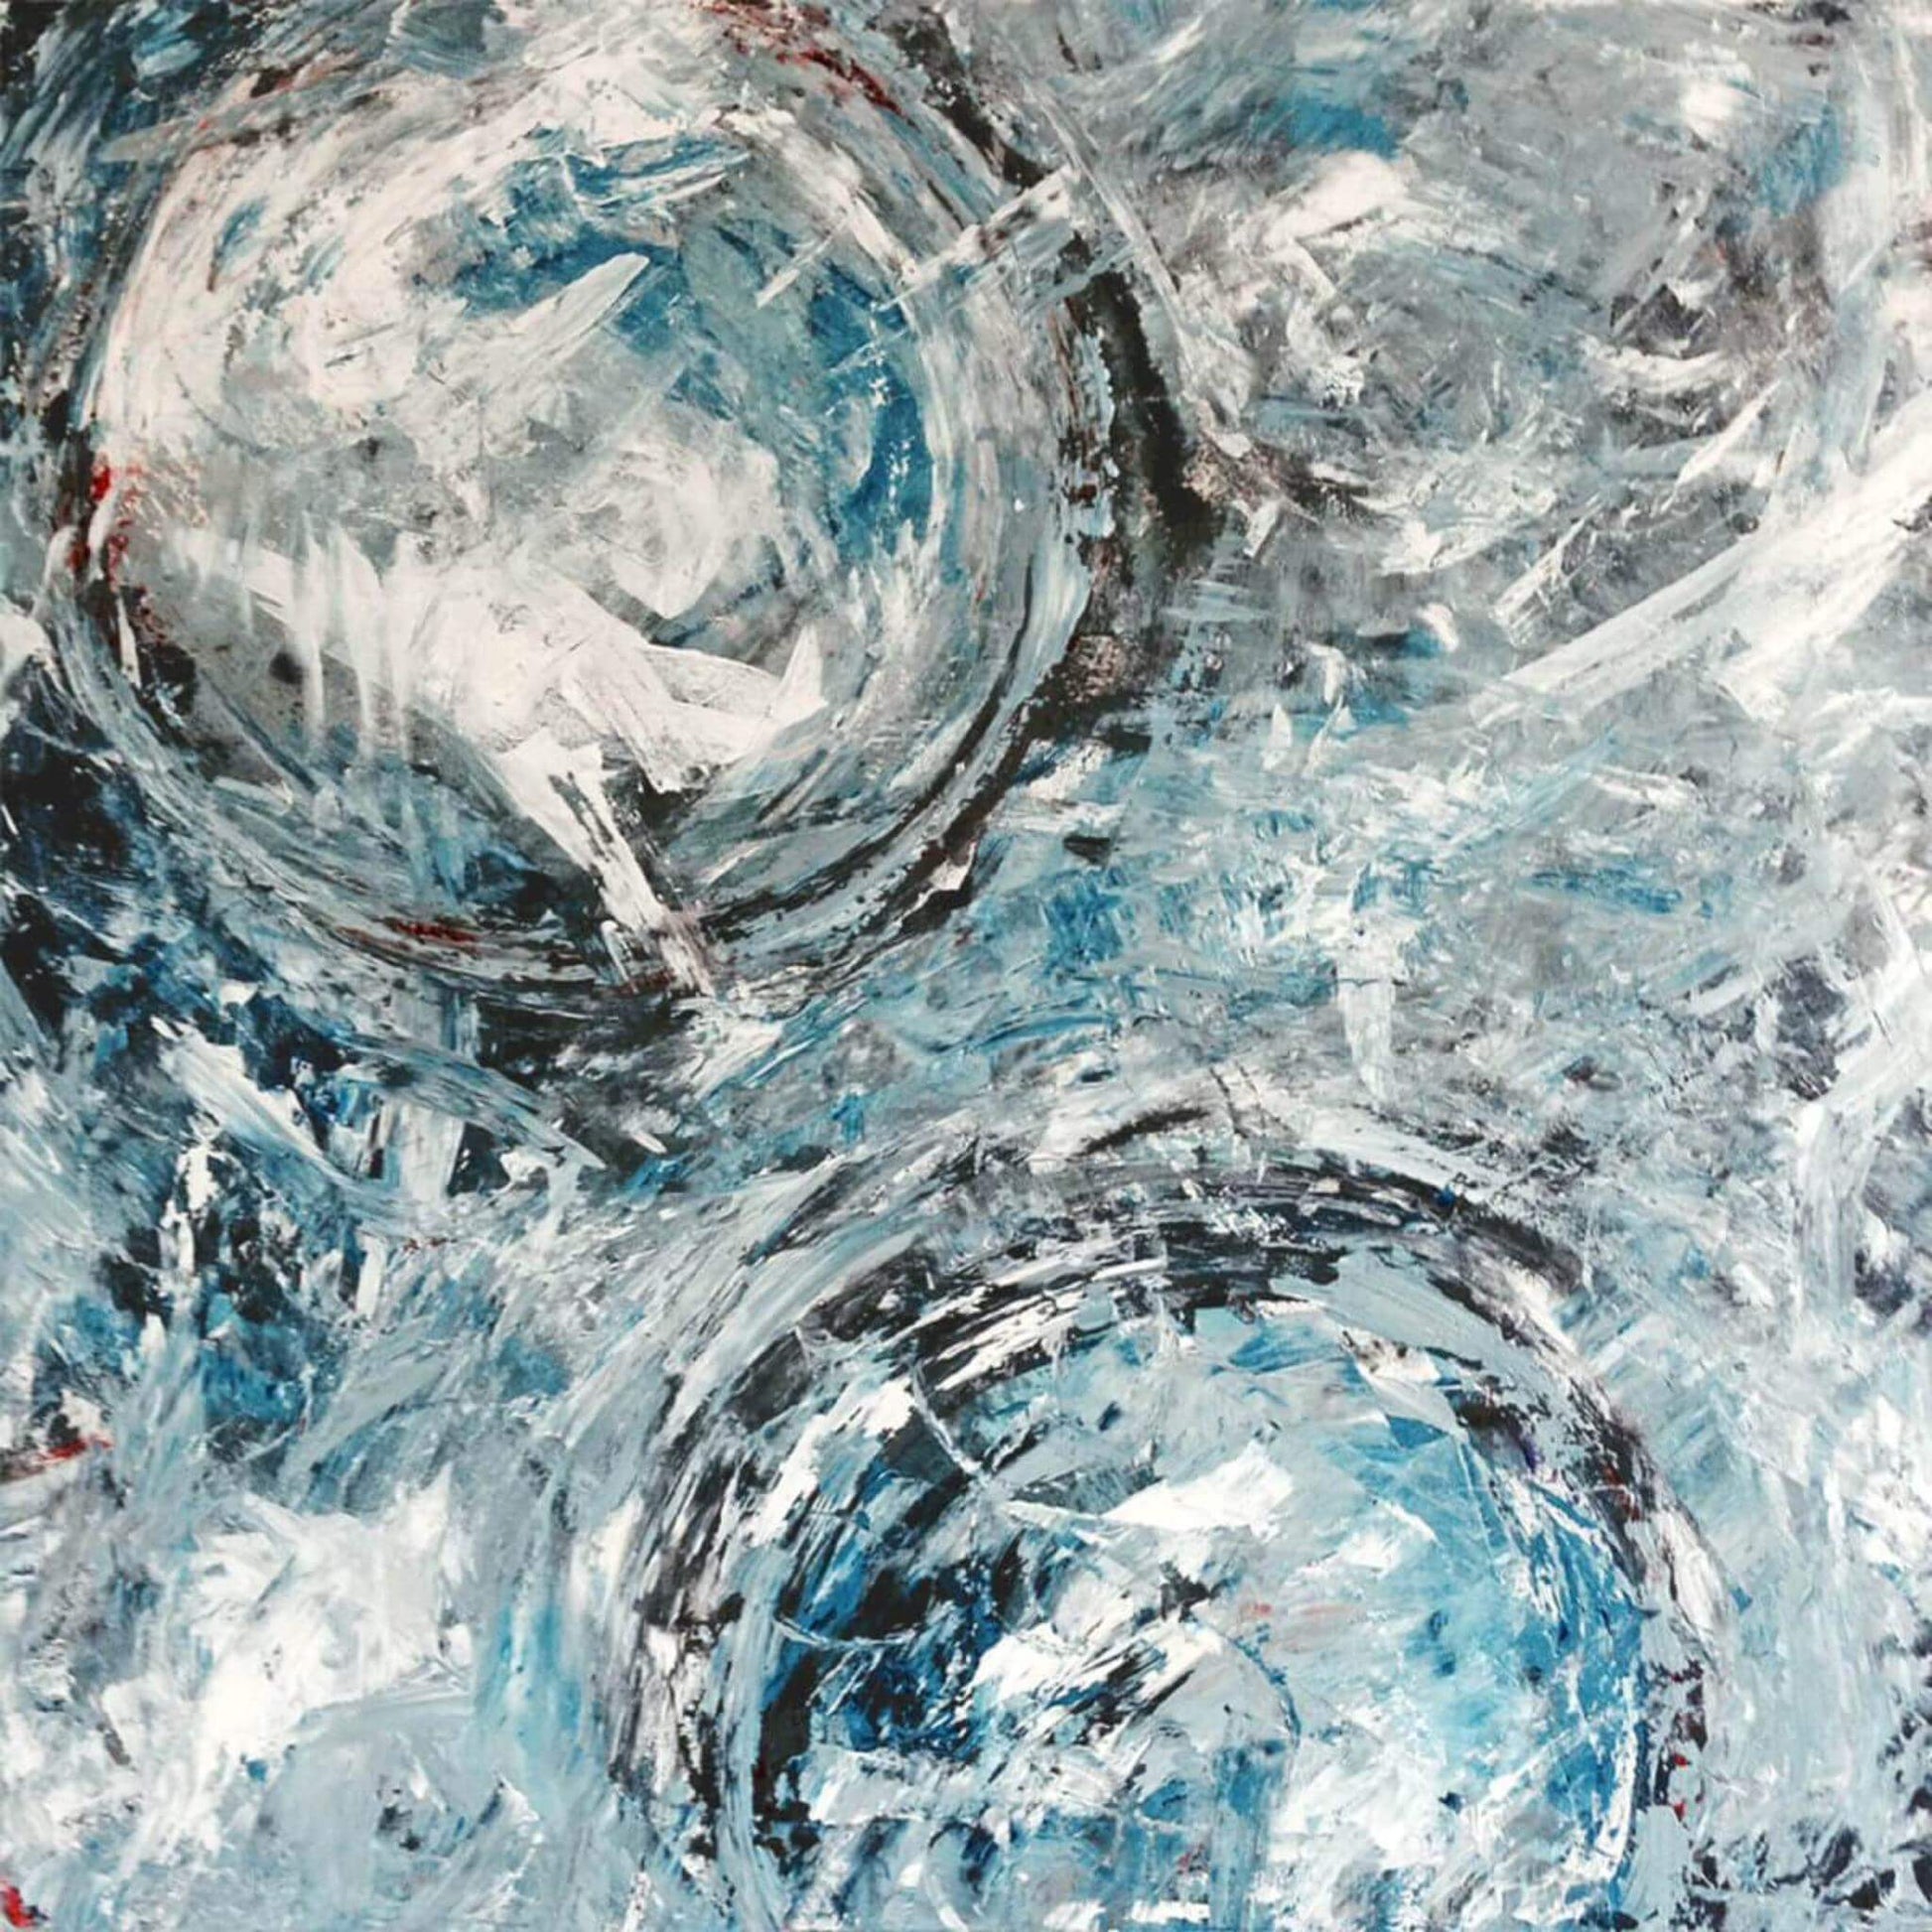 Abstract Art Aqua Azul 1 John Beard Collection